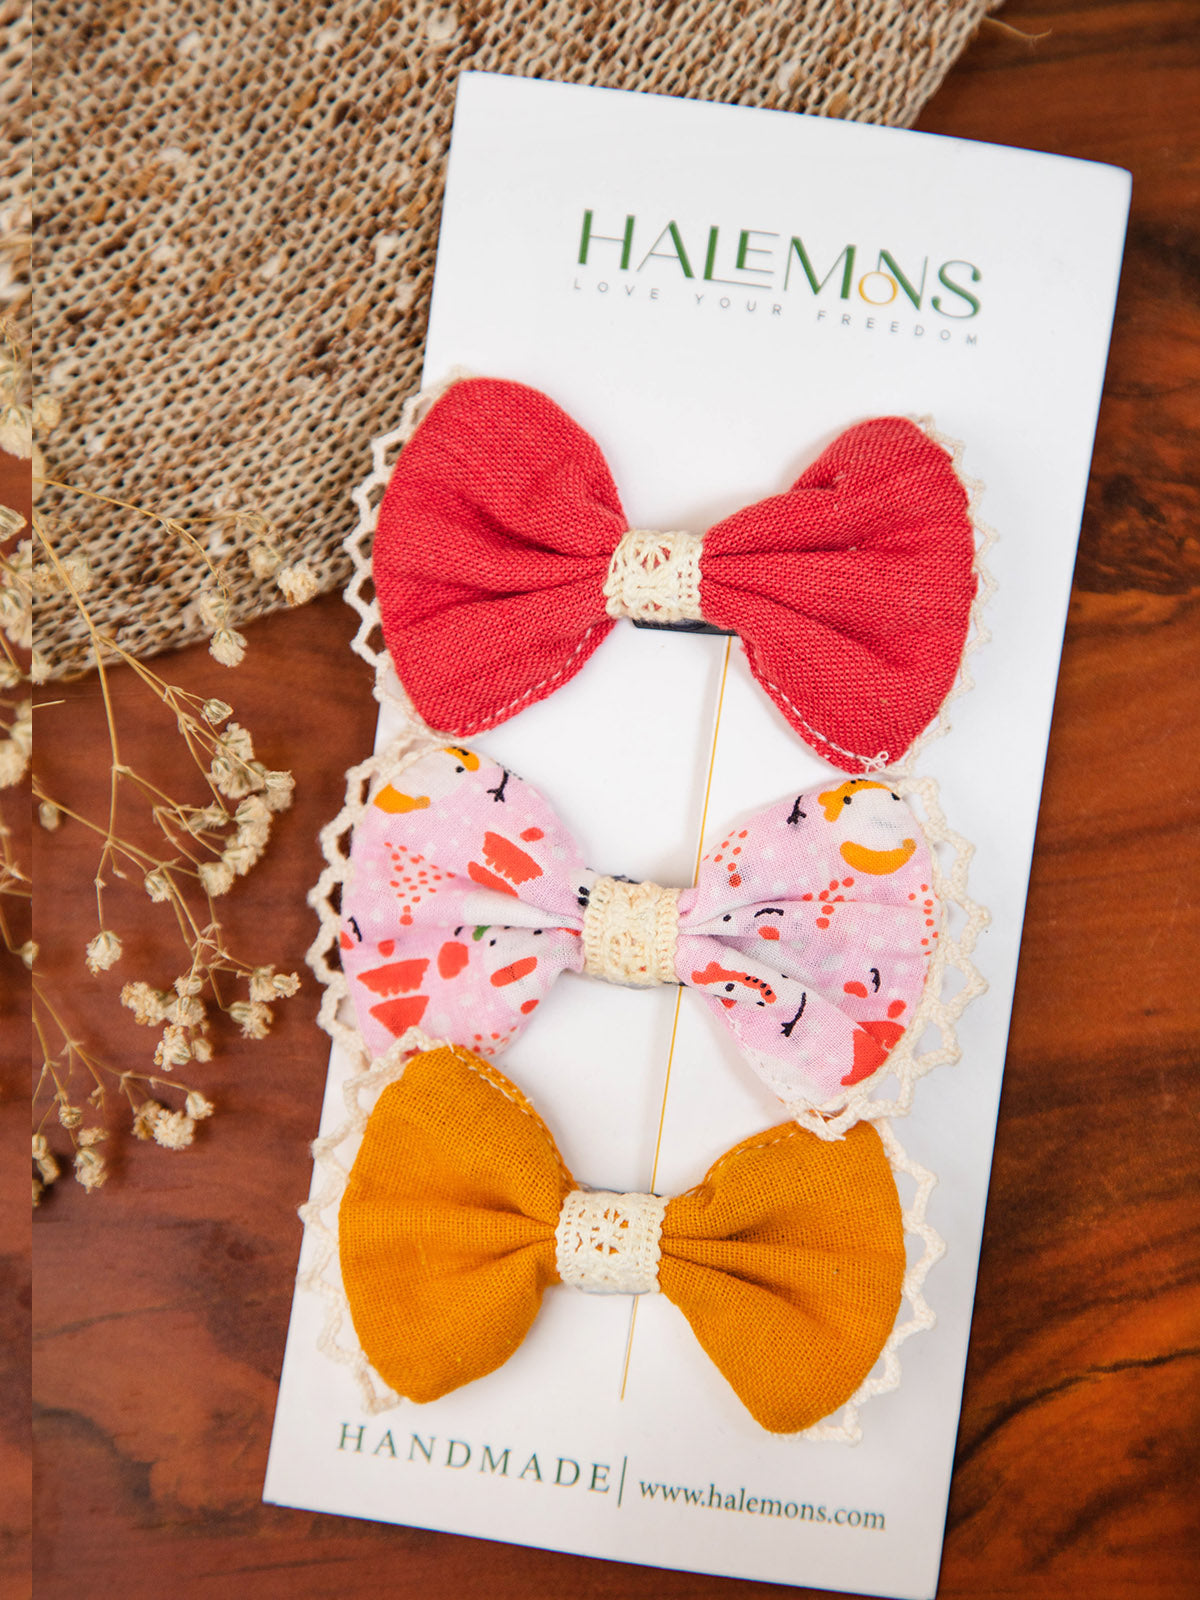 Girl's Lali Handmade Baby Infant Girl Toddler Hair Bow Clips Baby Bows Baby Gift Pack of 3 - HALEMONS